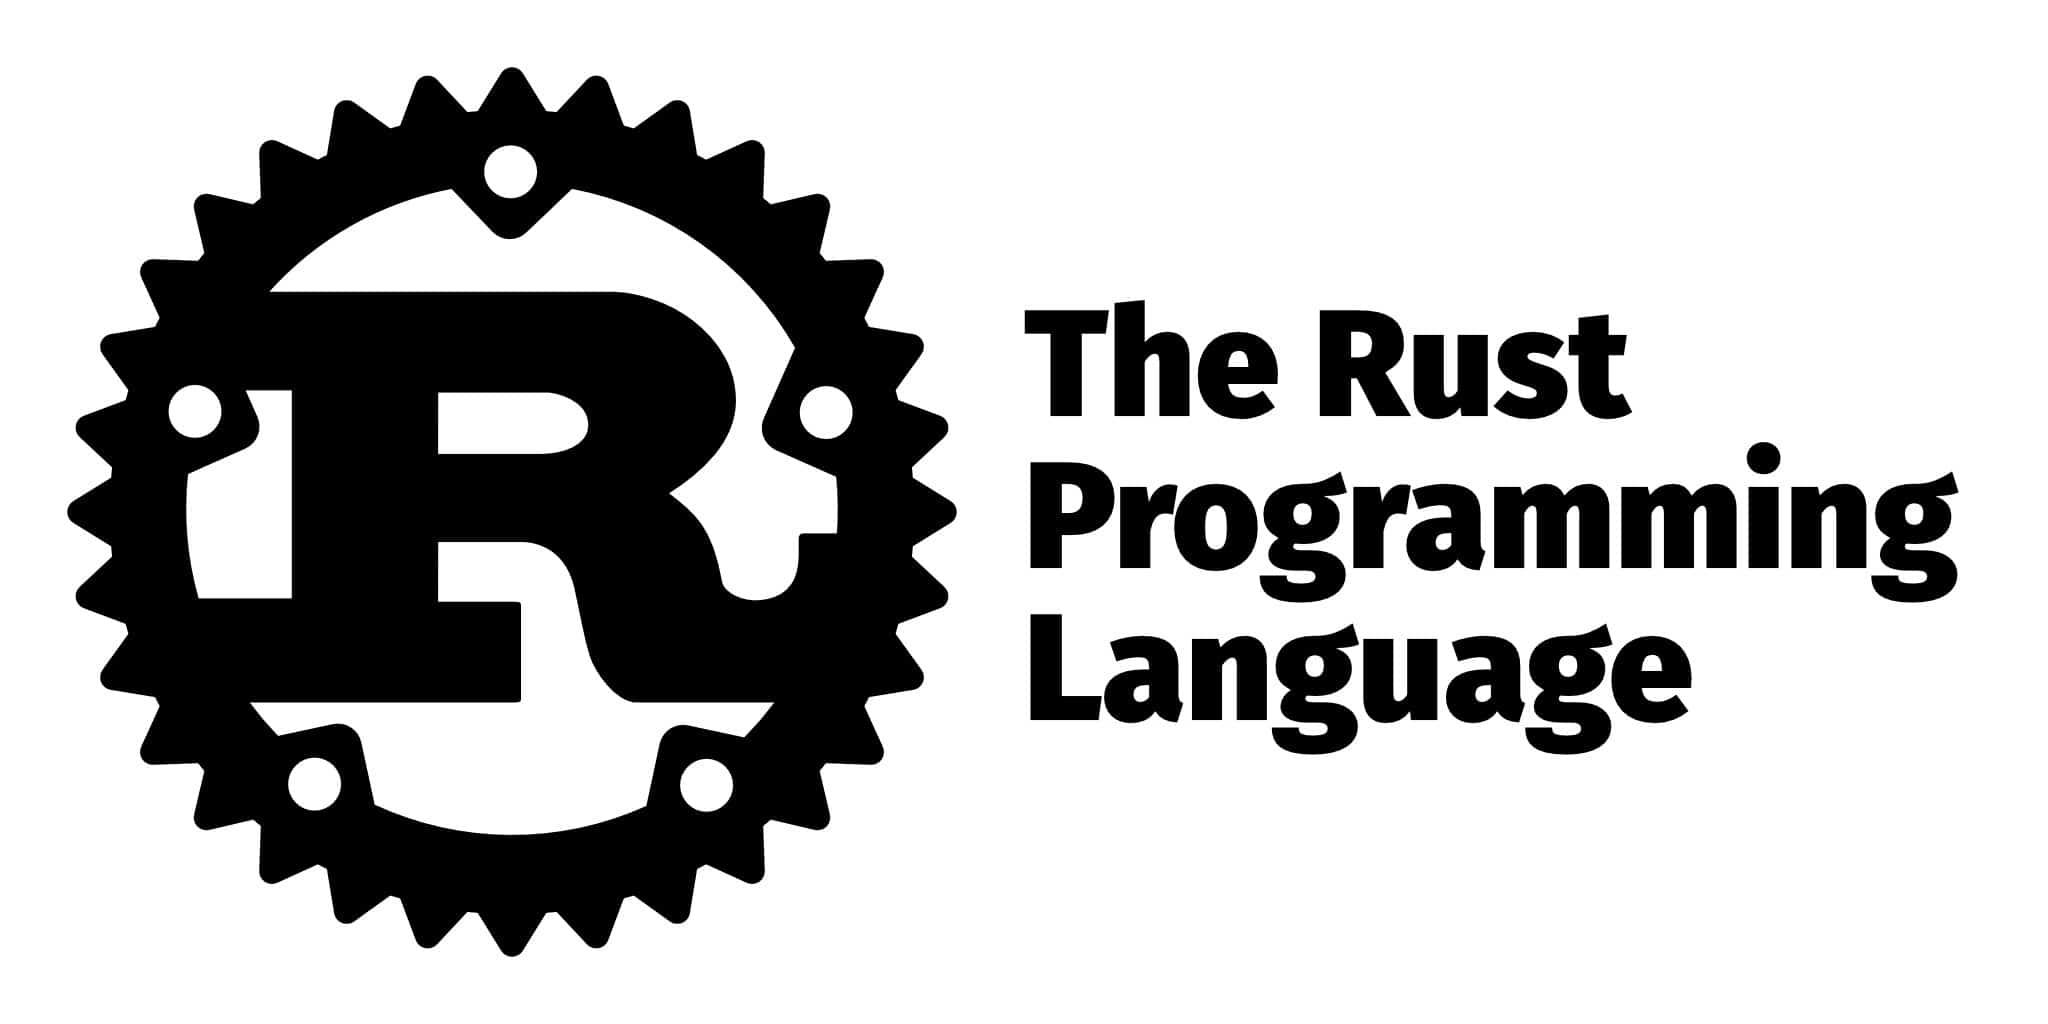 Rust se ha ido ganando espacios como un lenguaje de programación de carácter general y ha llegado incluso a la Web3